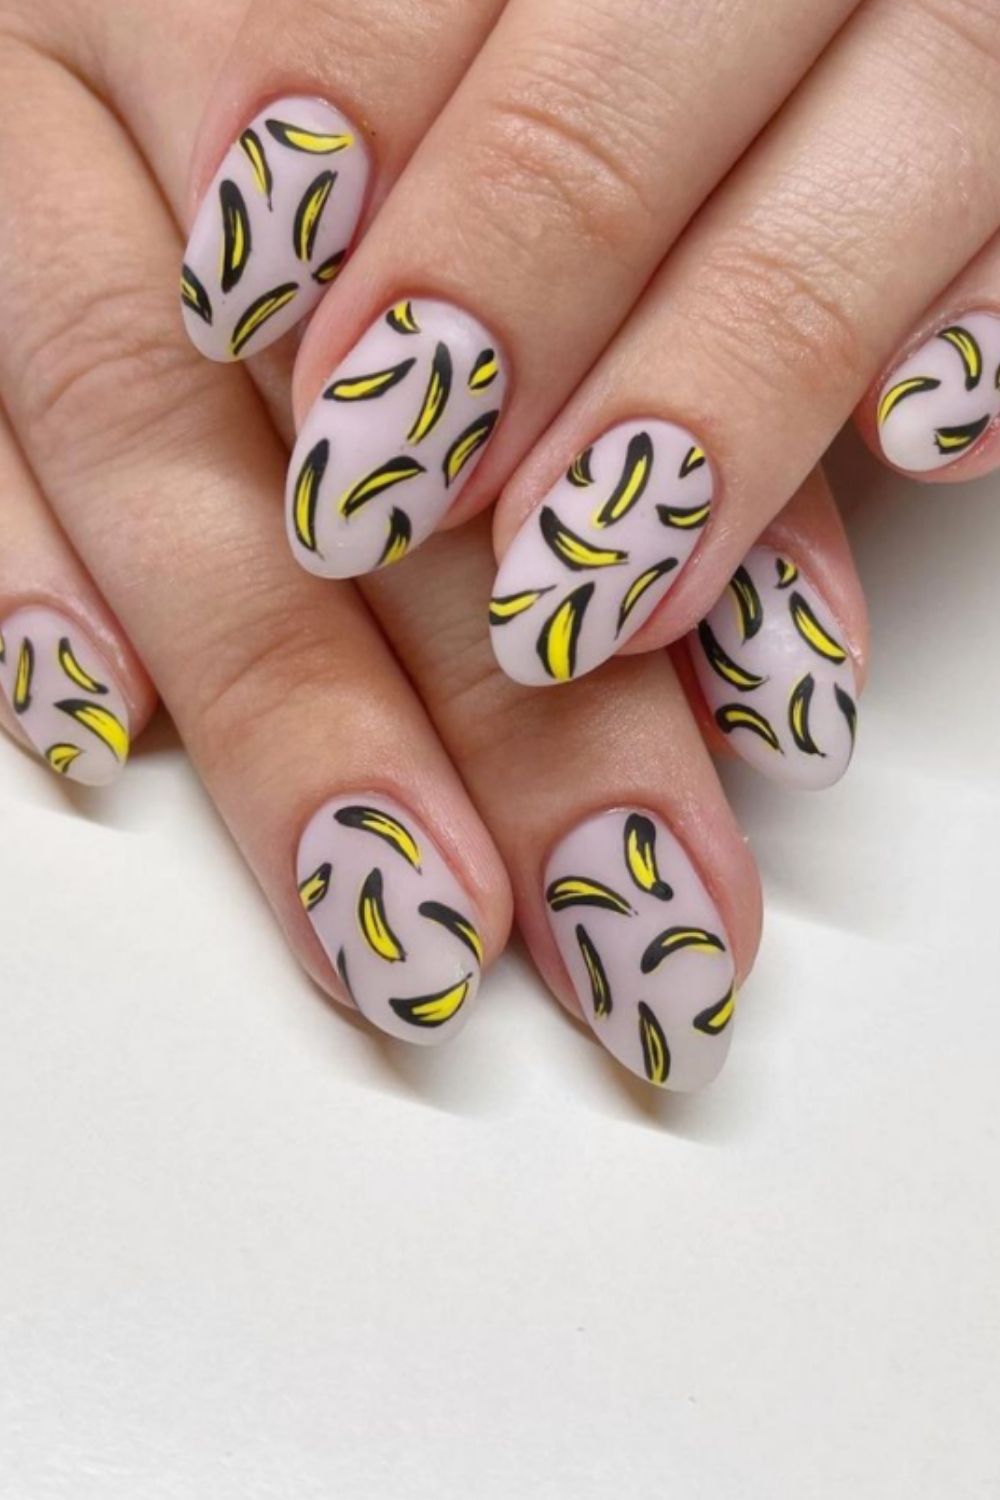 Summer nail art design with banana